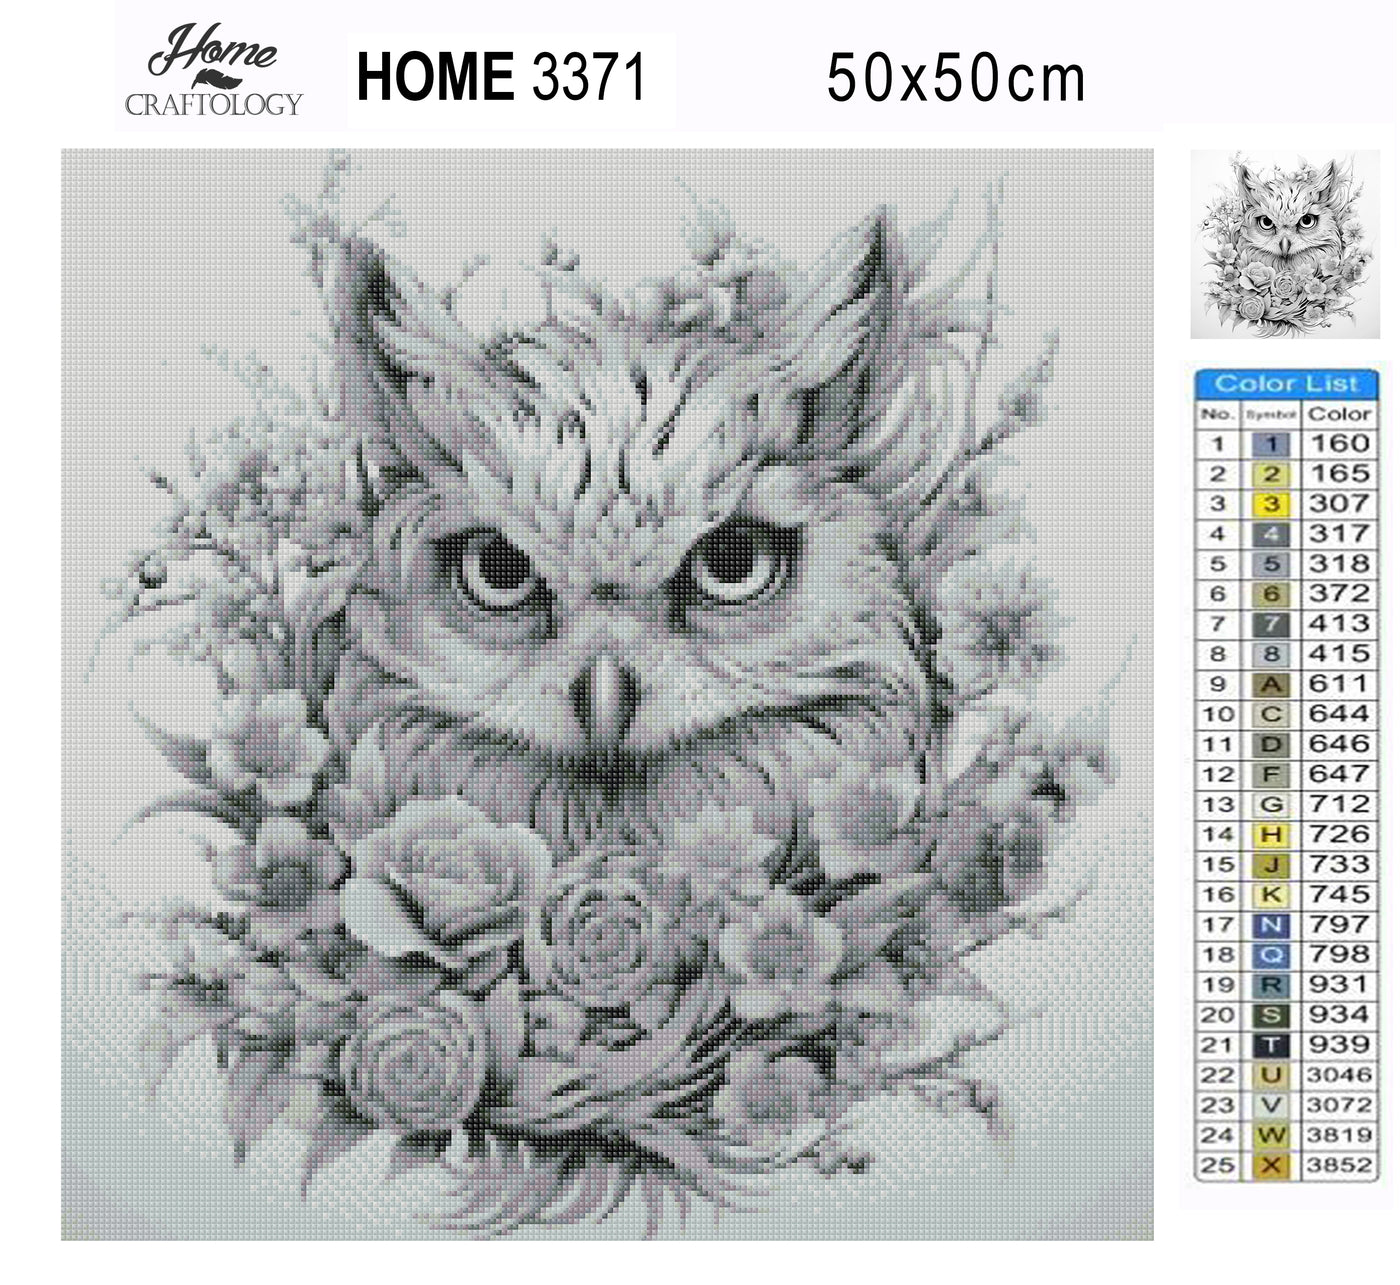 New! Owl with Flowers - Premium Diamond Painting Kit